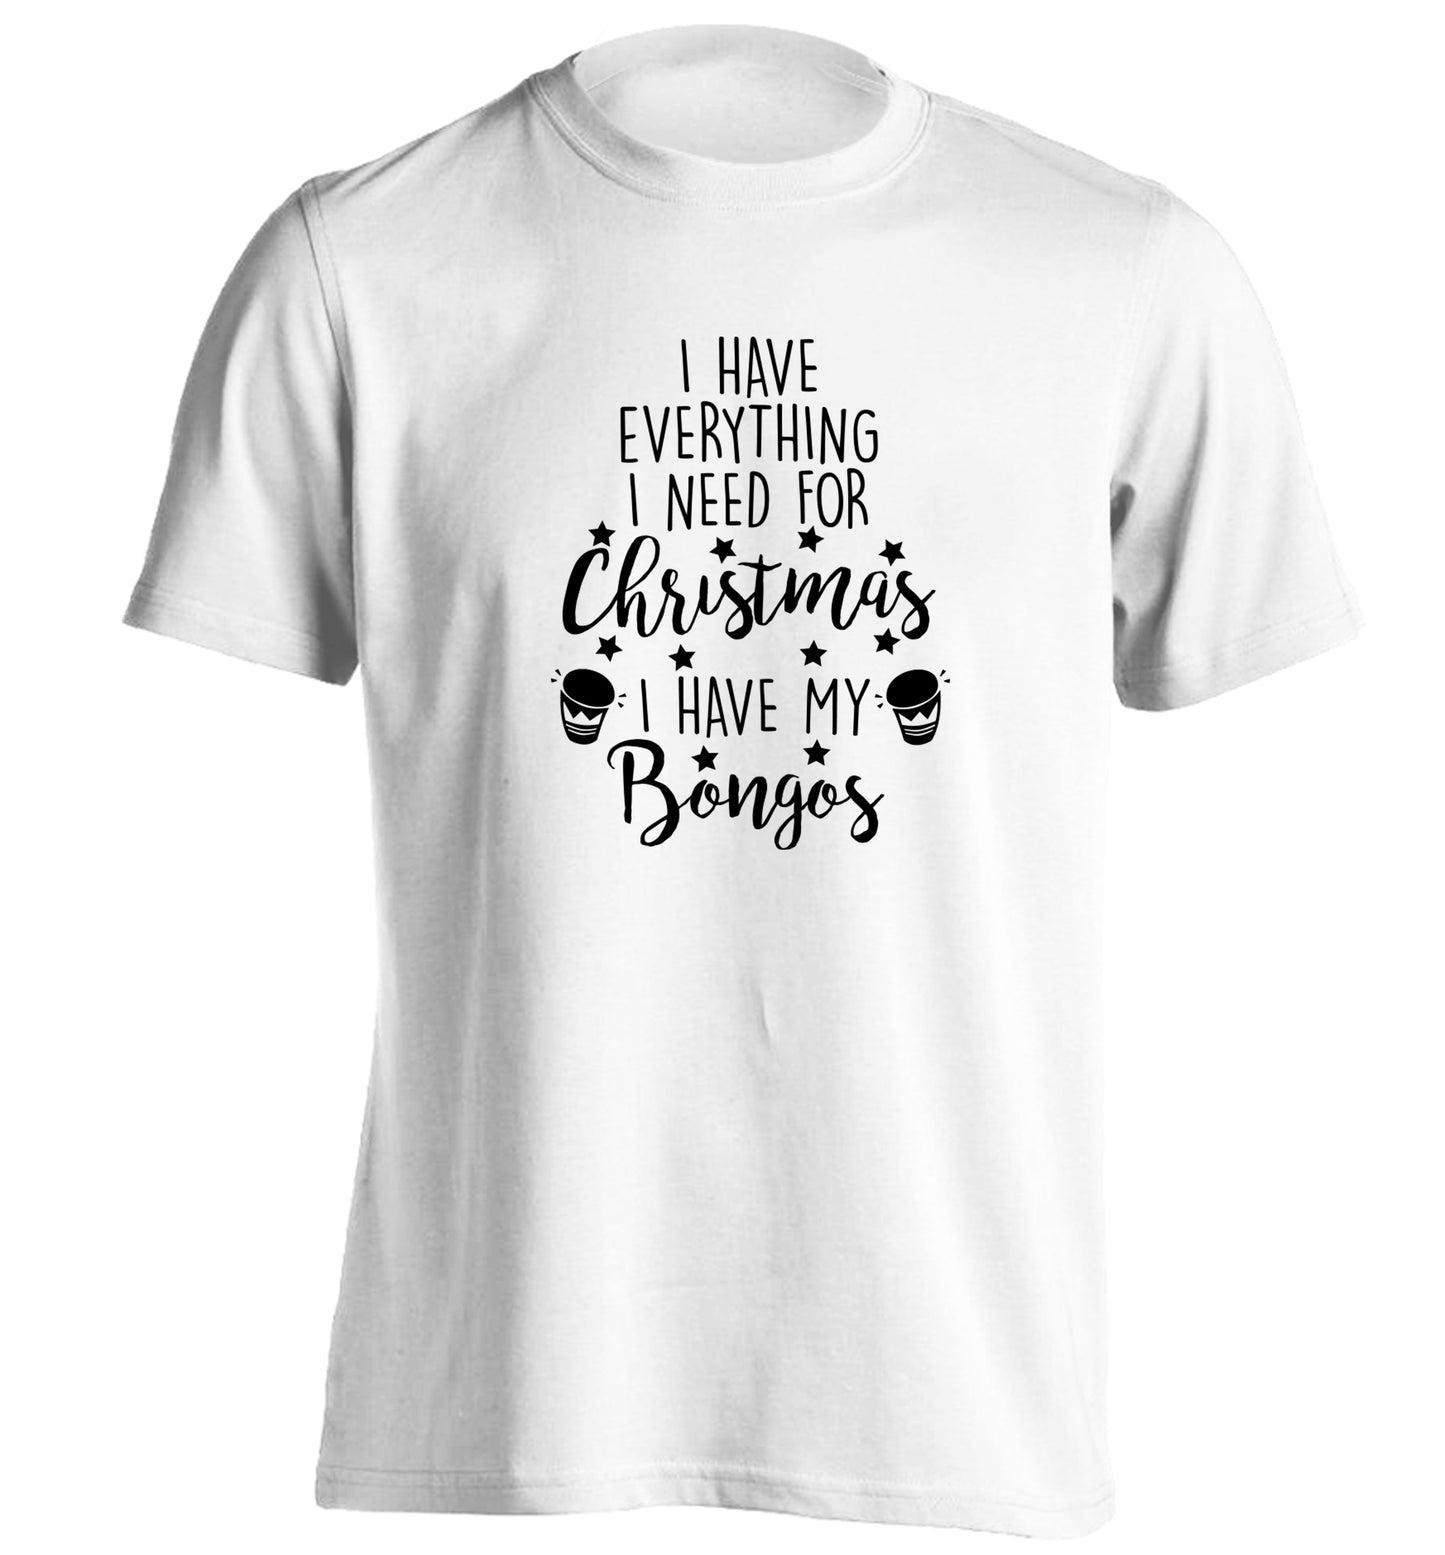 I have everything I need for Christmas I have my bongos! adults unisex white Tshirt 2XL